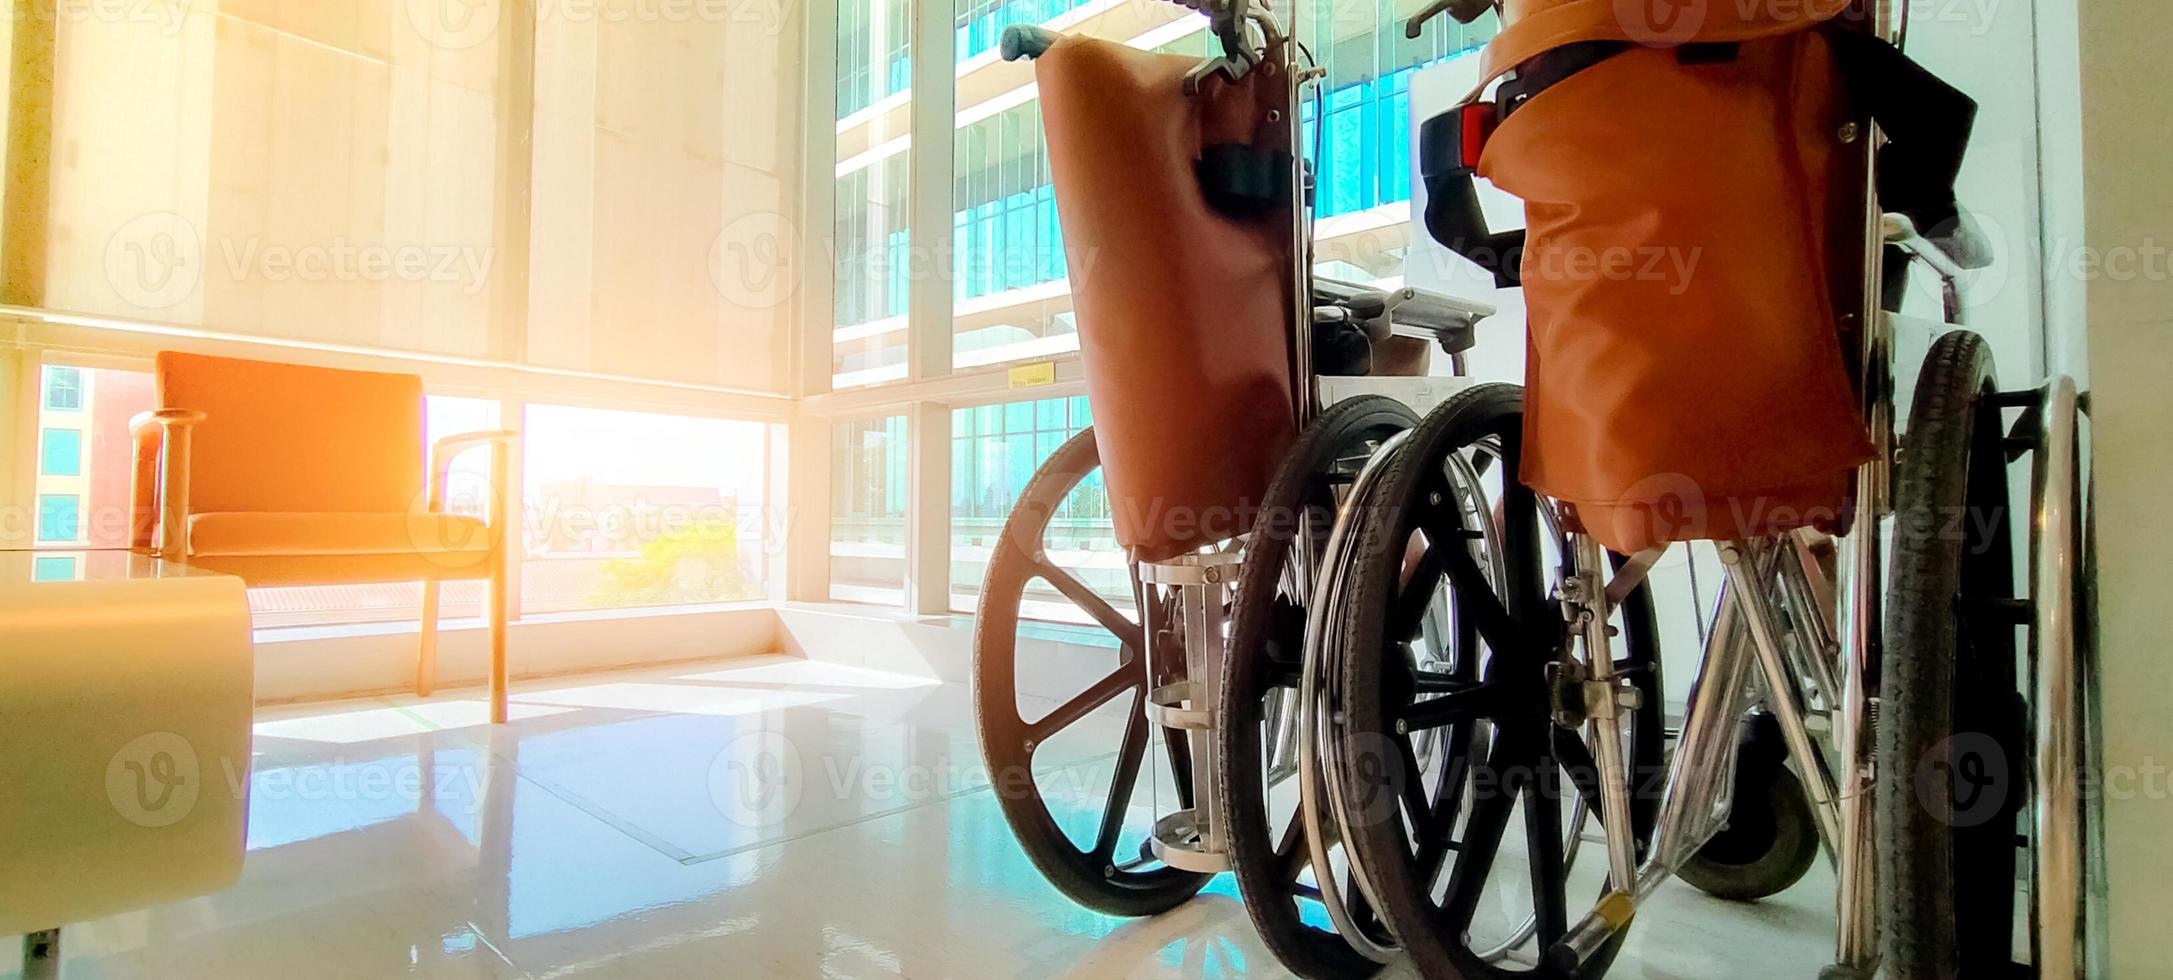 sedia a rotelle vuota in ospedale privato per pazienti di servizio e disabili. apparecchiature mediche in ospedale per l'assistenza agli anziani portatori di handicap. sedia con ruote per la cura del paziente in casa di cura. foto